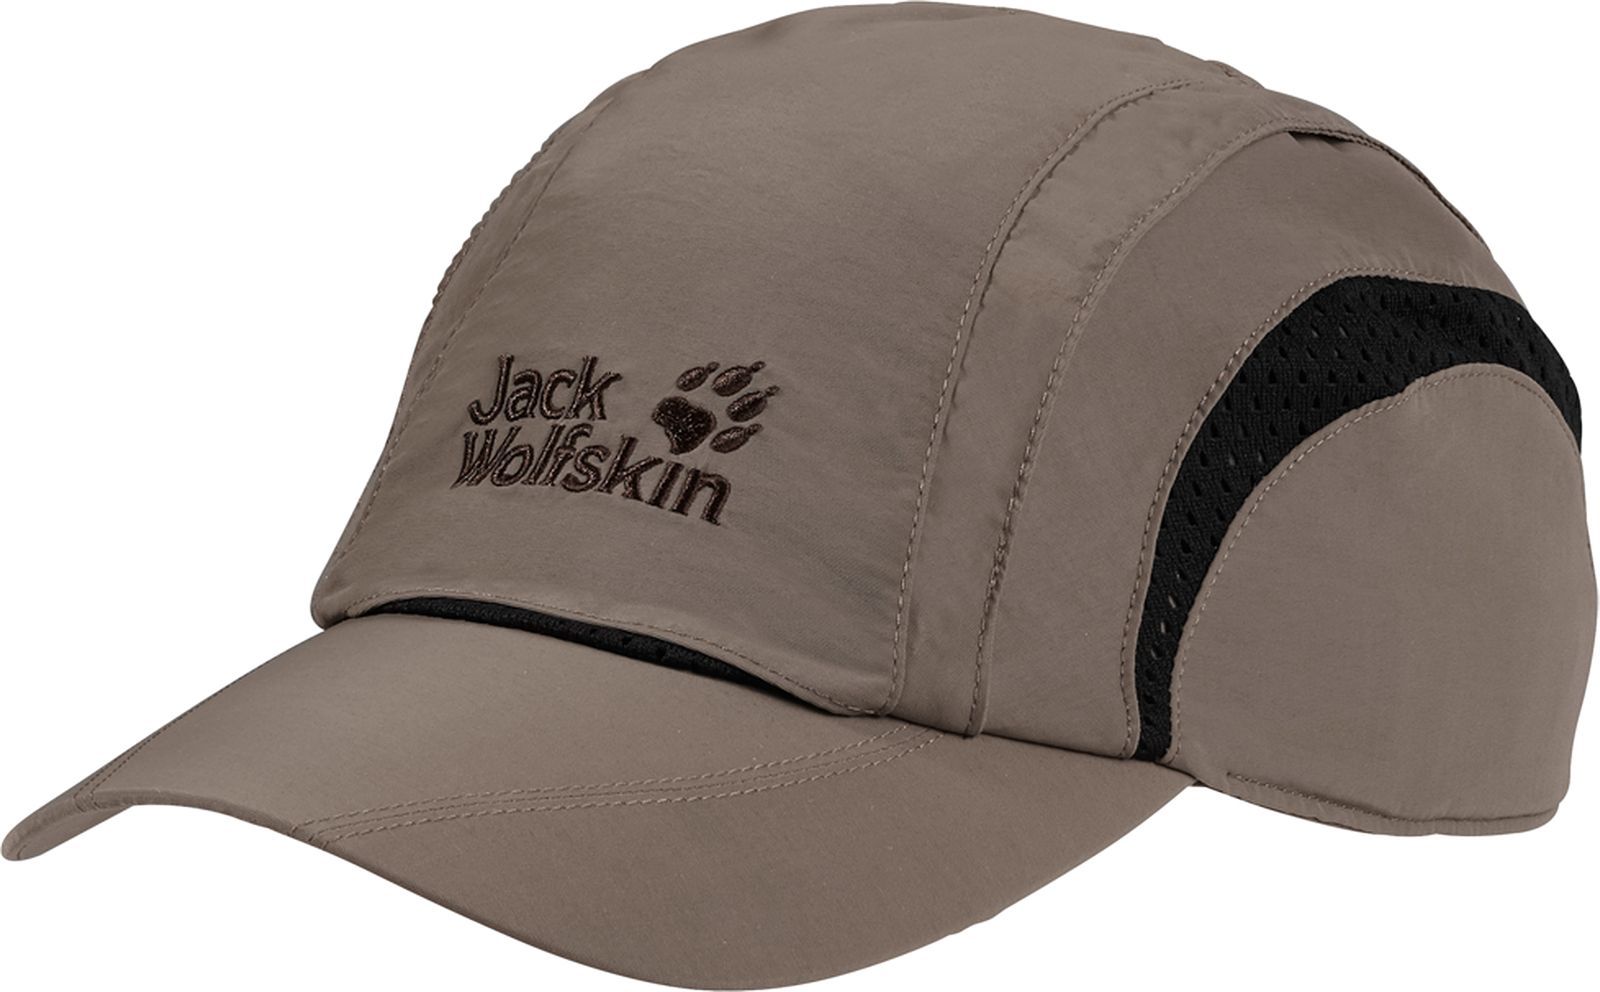  Jack Wolfskin Vent Pro Cap, : -. 19222-5116.  L (57/60)